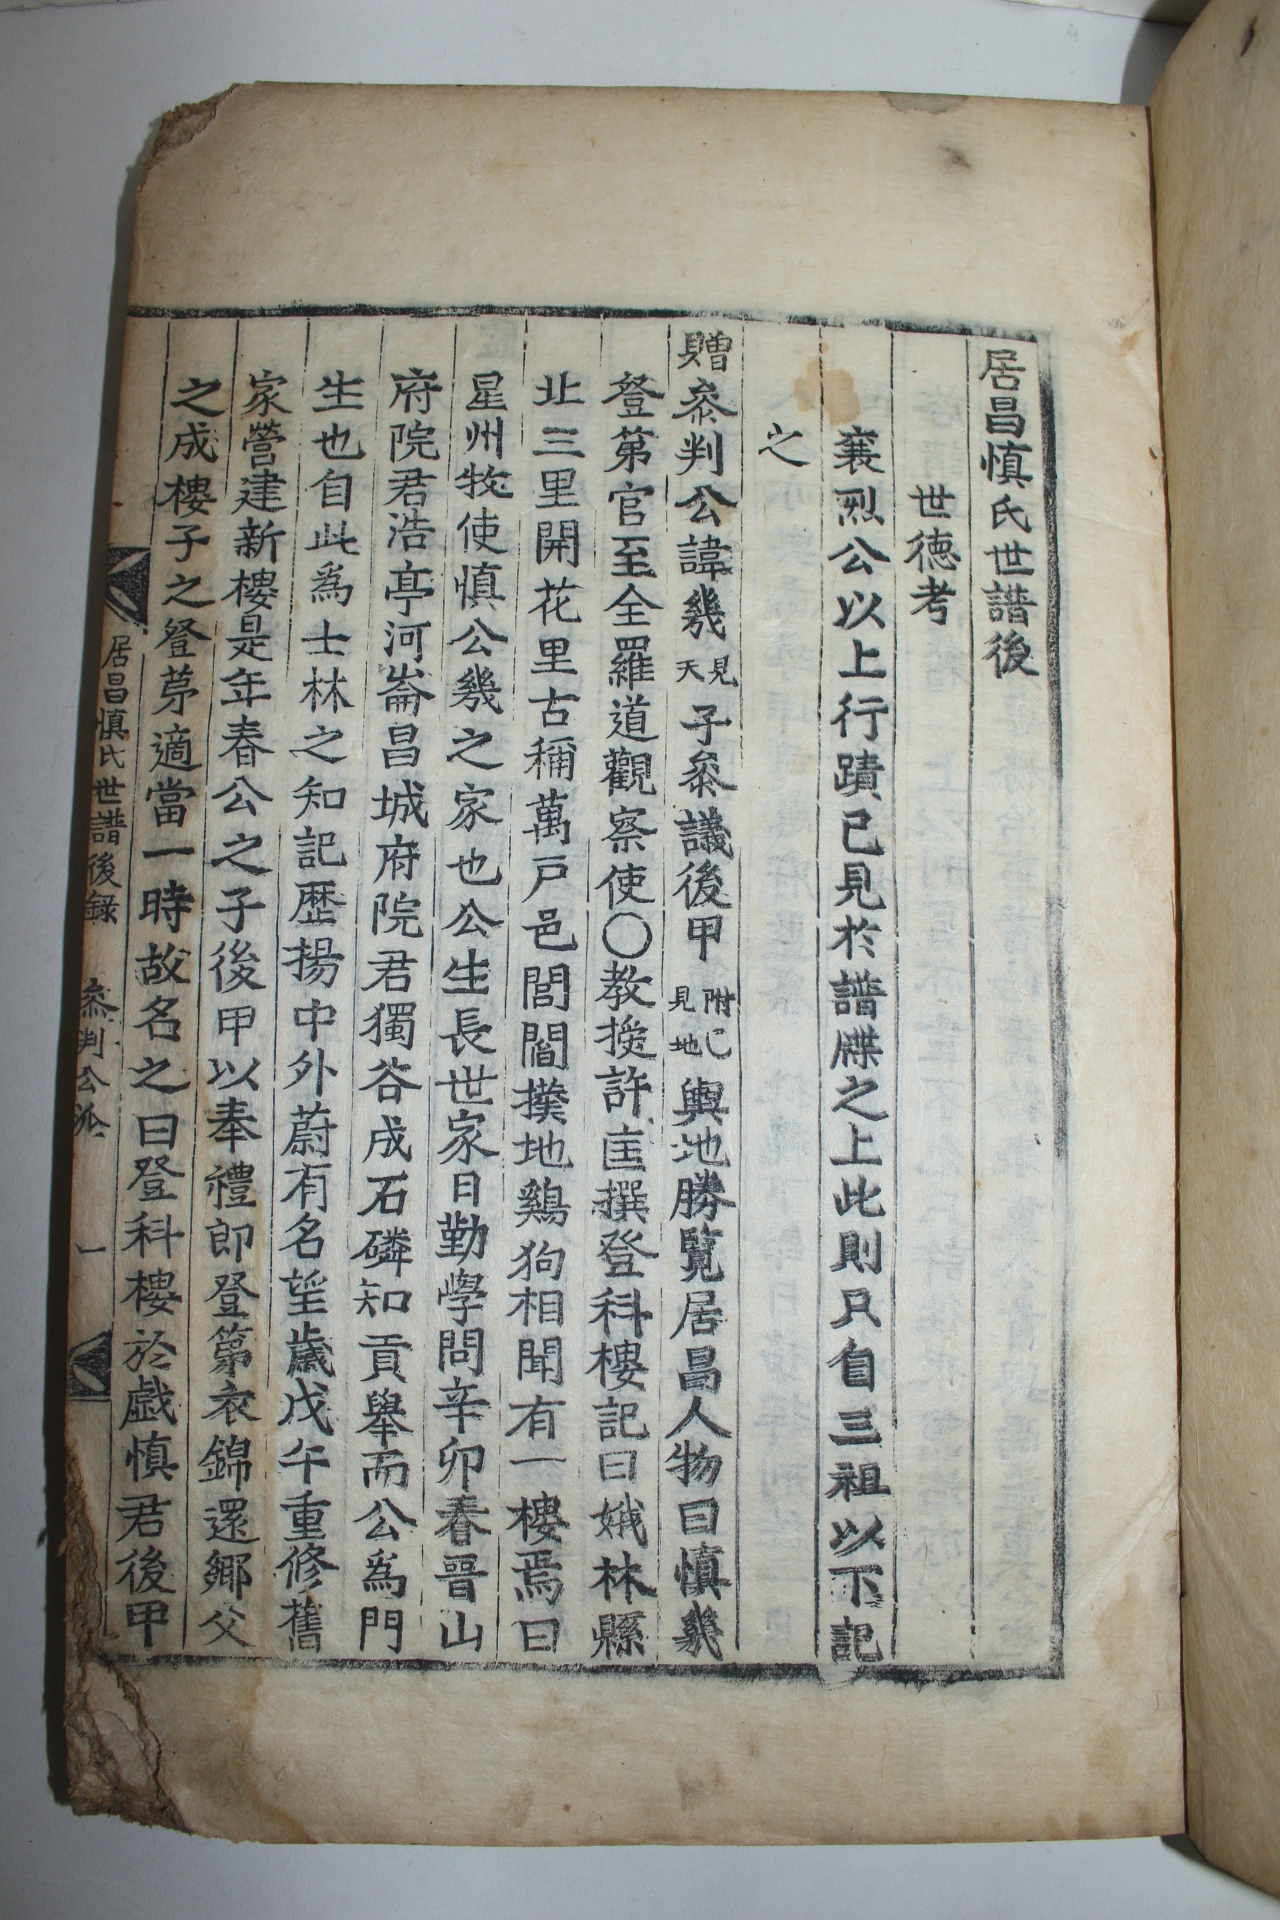 1851년 목판본 거창신씨세보(居昌慎氏世譜) 12책